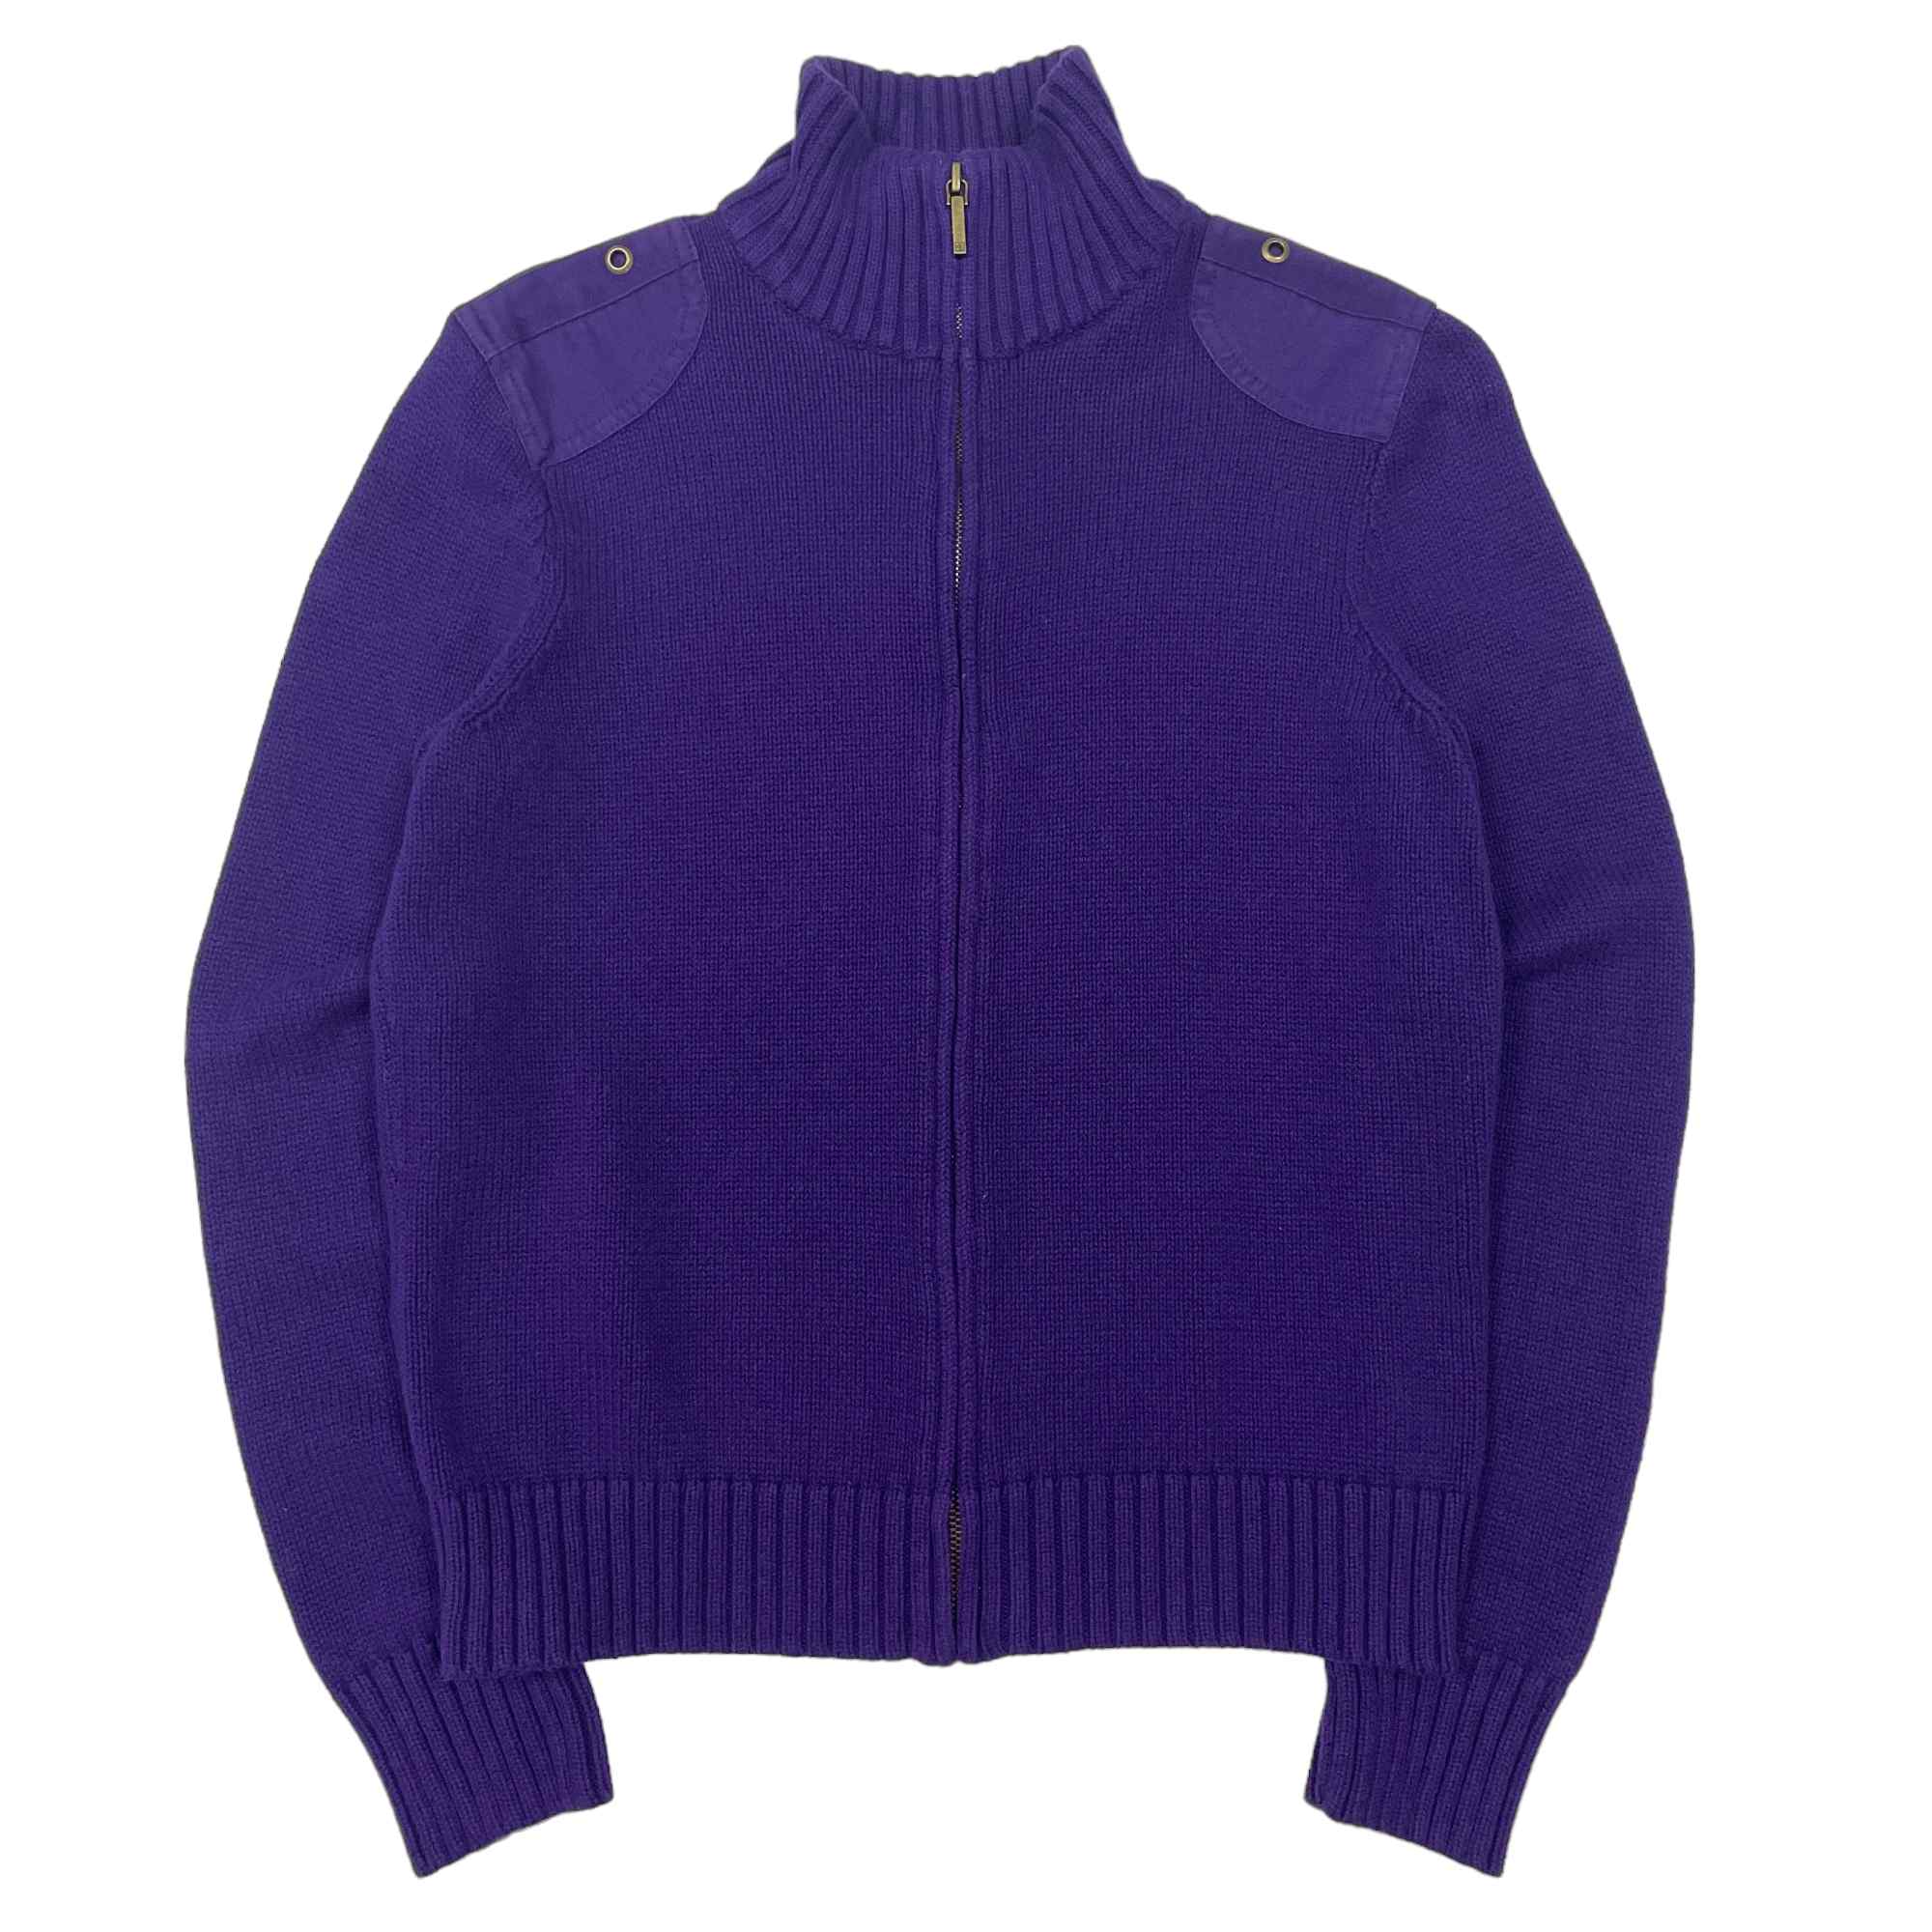 Ralph Lauren Knitted Zip Fleece - Medium